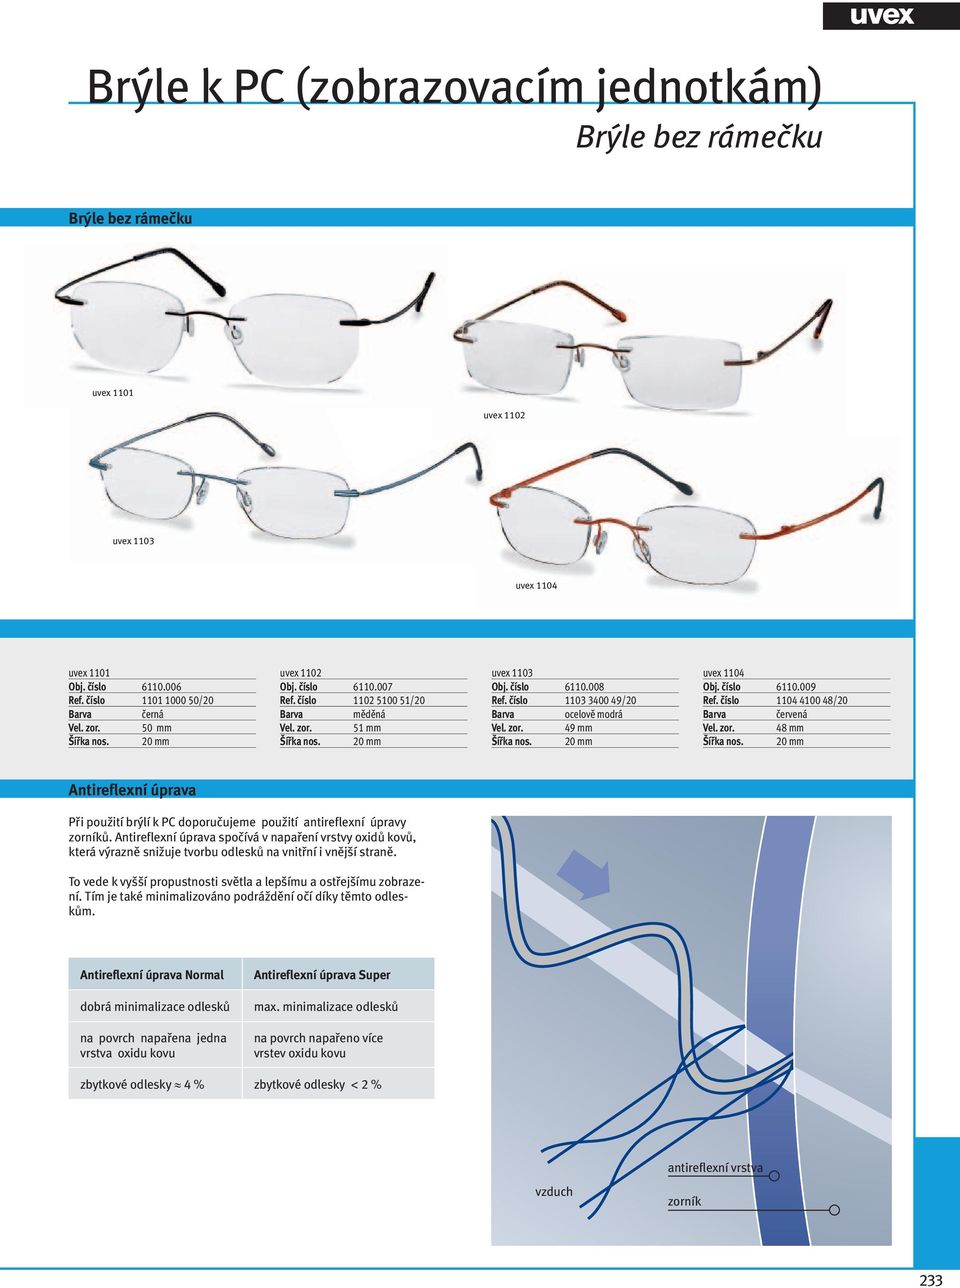 20 mm uvex 1104 Obj. číslo 6110.009 Ref. číslo 1104 4100 48/20 červená 48 mm Šířka nos. 20 mm Antireflexní úprava Při použití brýlí k PC doporučujeme použití antireflexní úpravy zorníků.